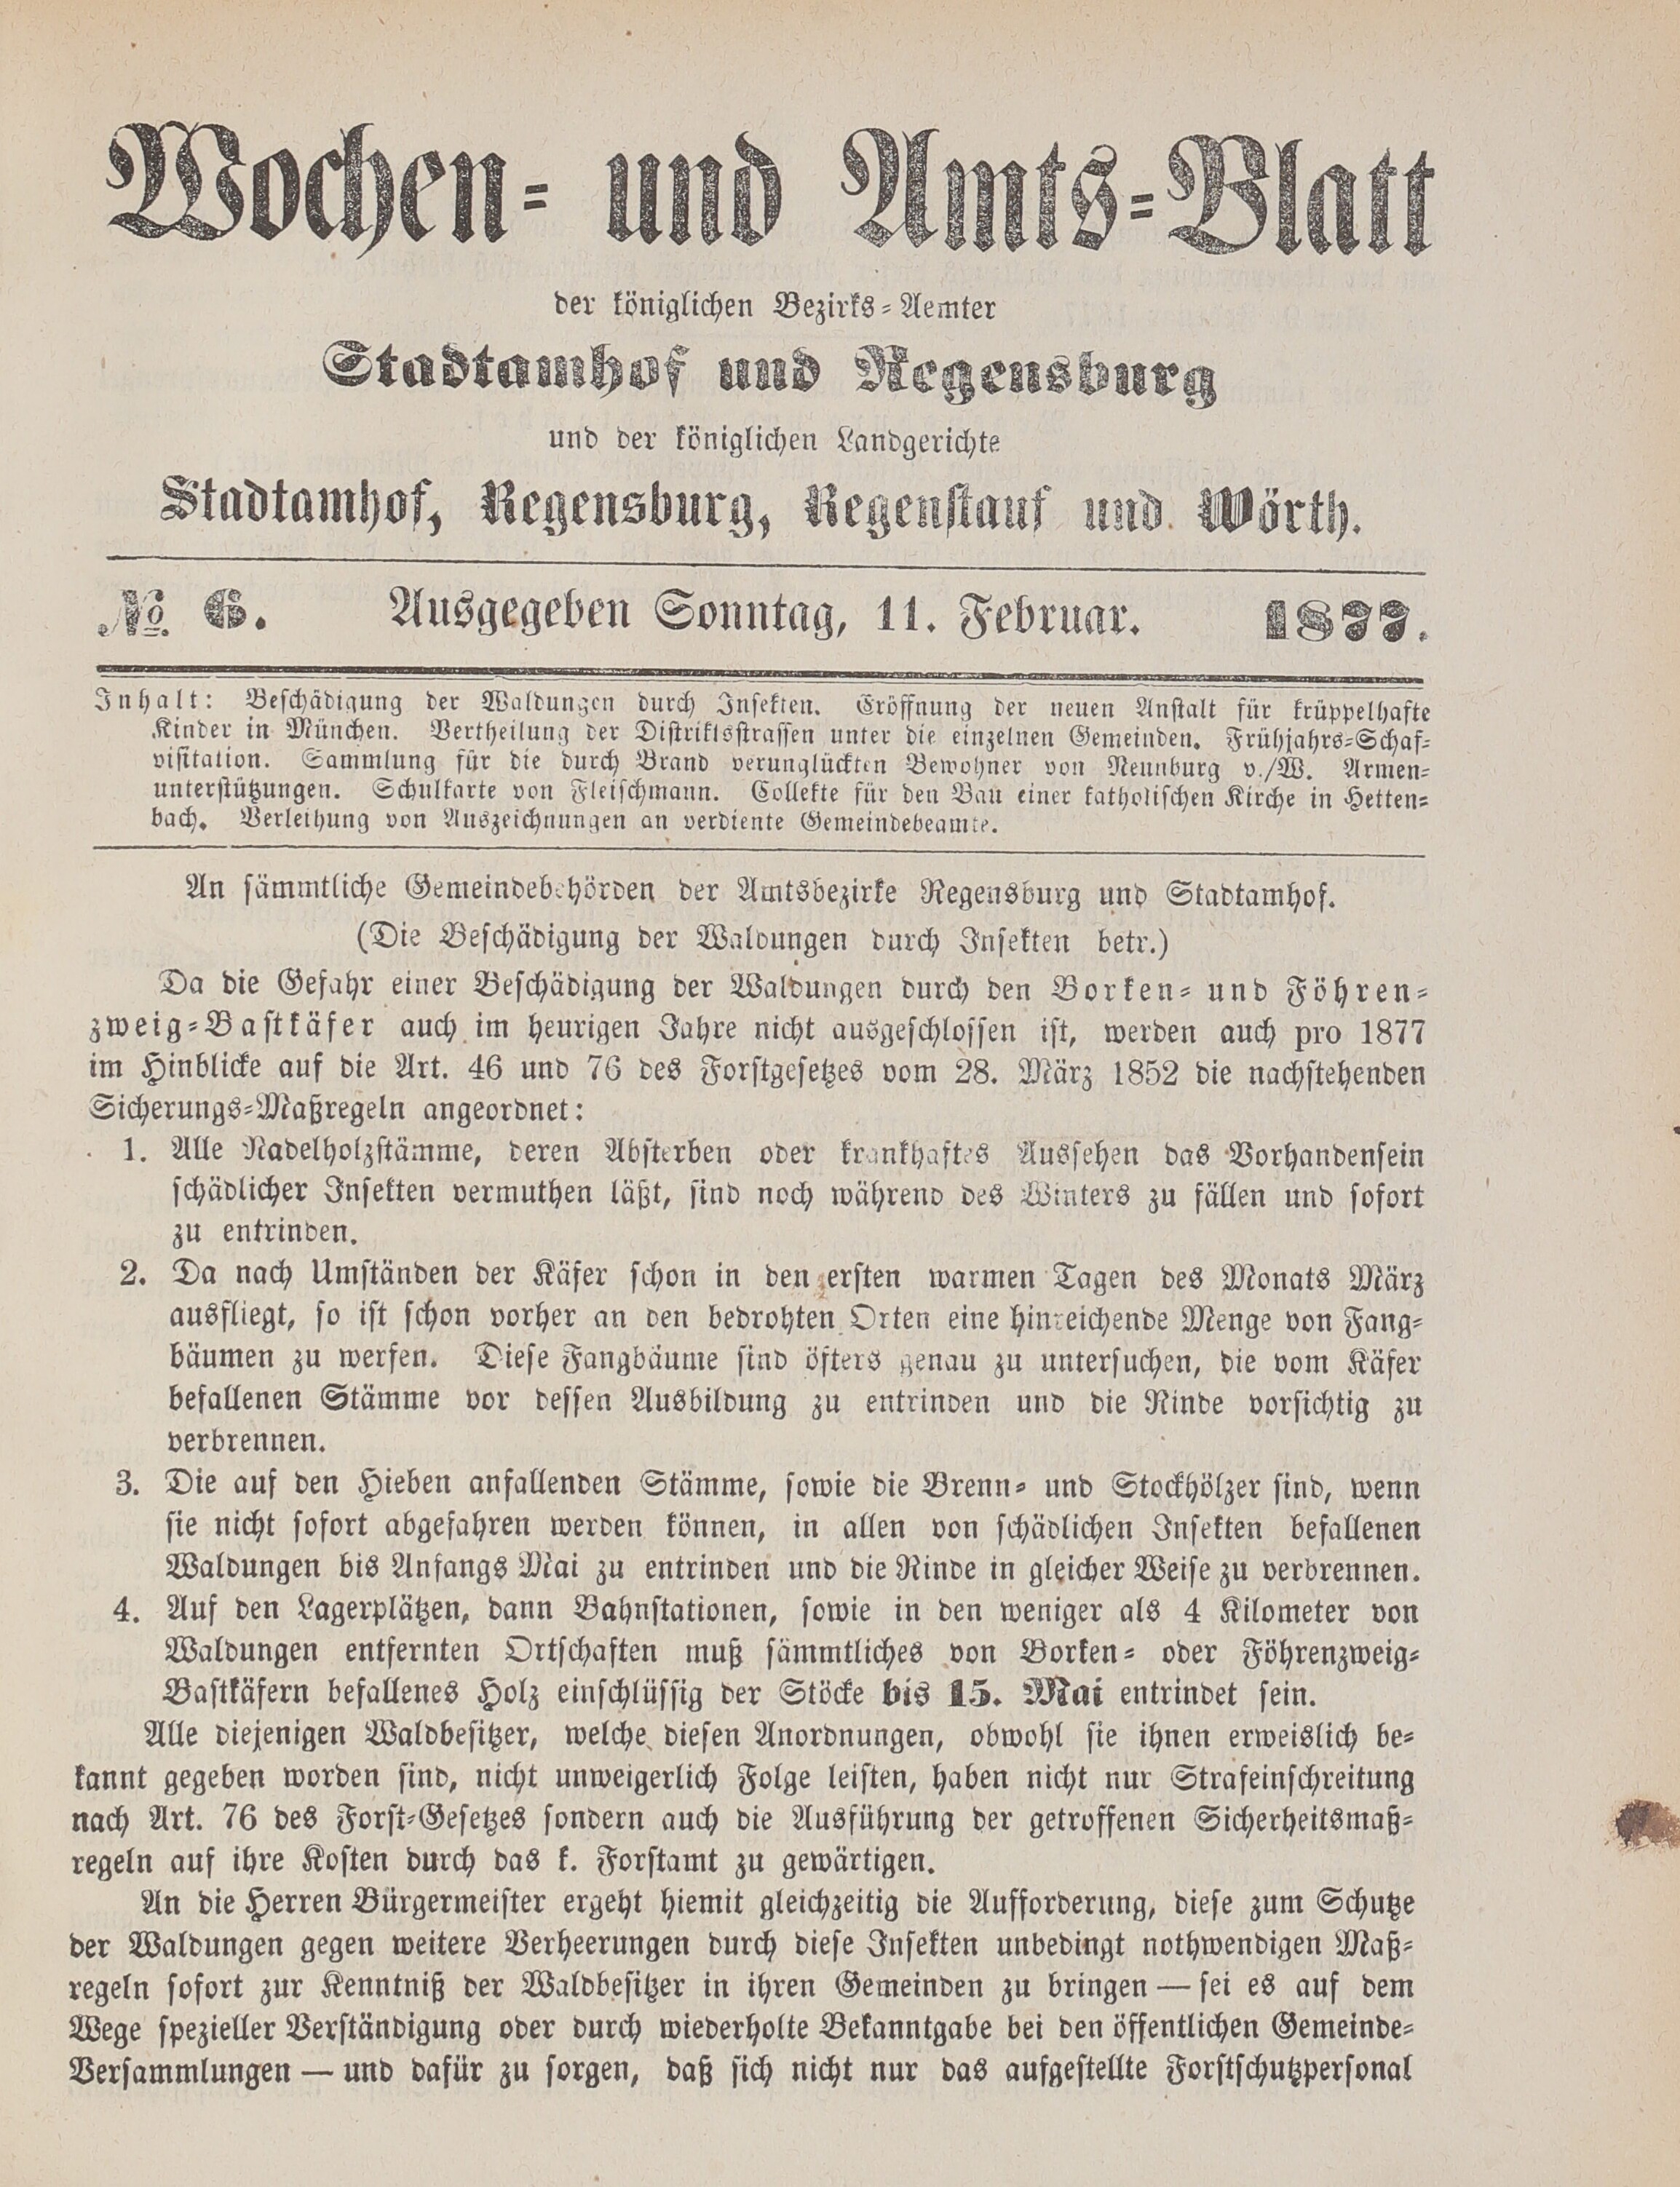 1. amtsblatt-stadtamhof-regensburg-1877-02-11-n6_0340